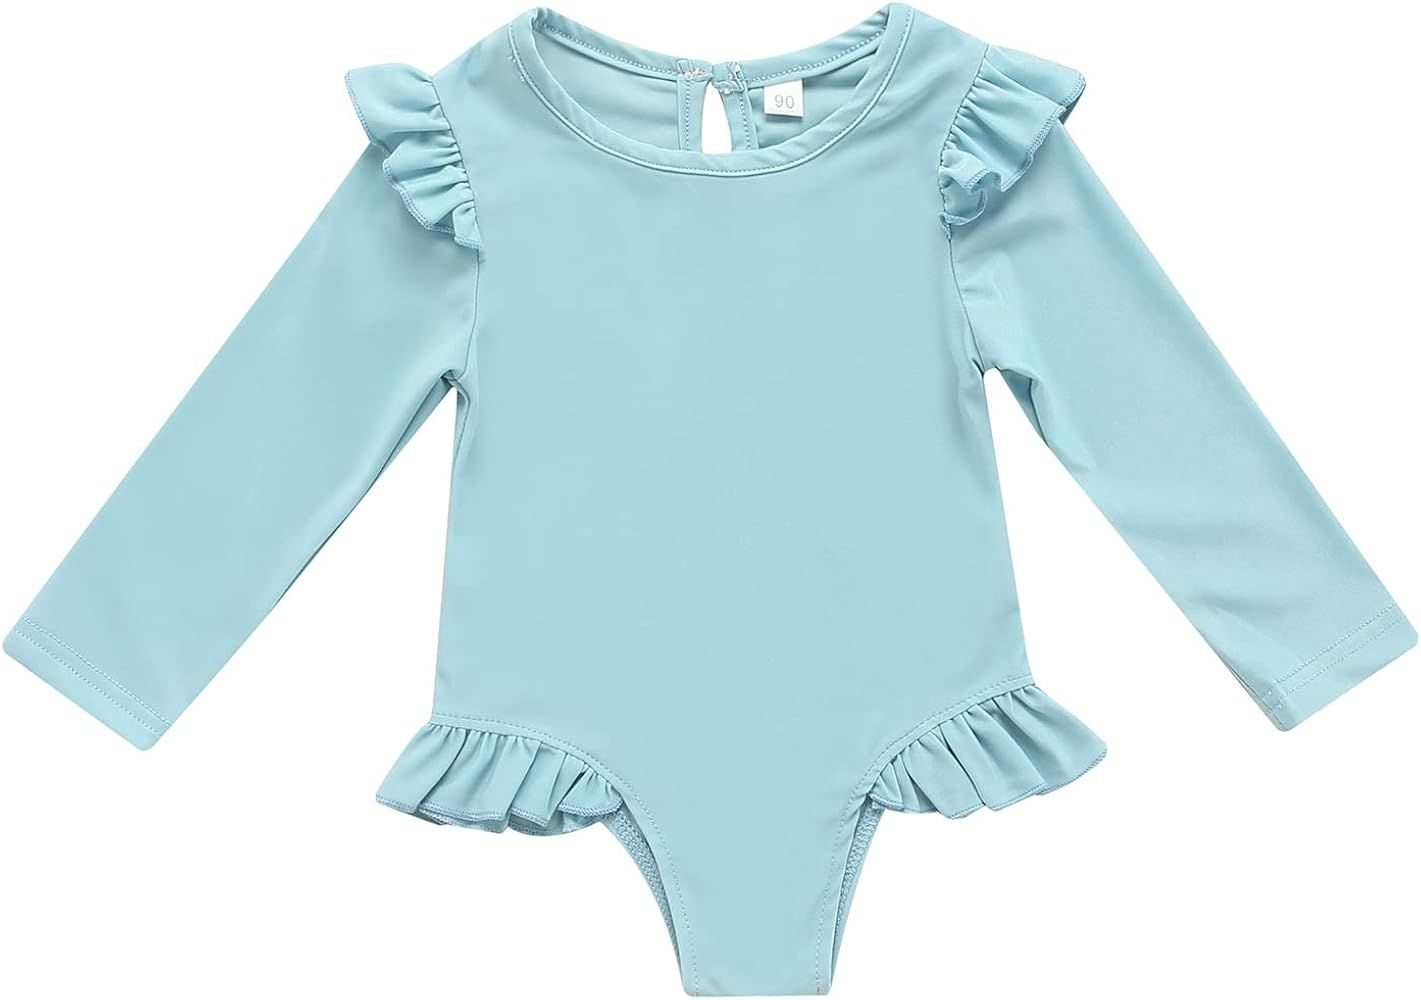 Sasaerucure Toddler Baby Girls Swimsuit Solid Ruffle Long Sleeve Bathing Suit Rash Guard Shirt Swimw | Amazon (US)